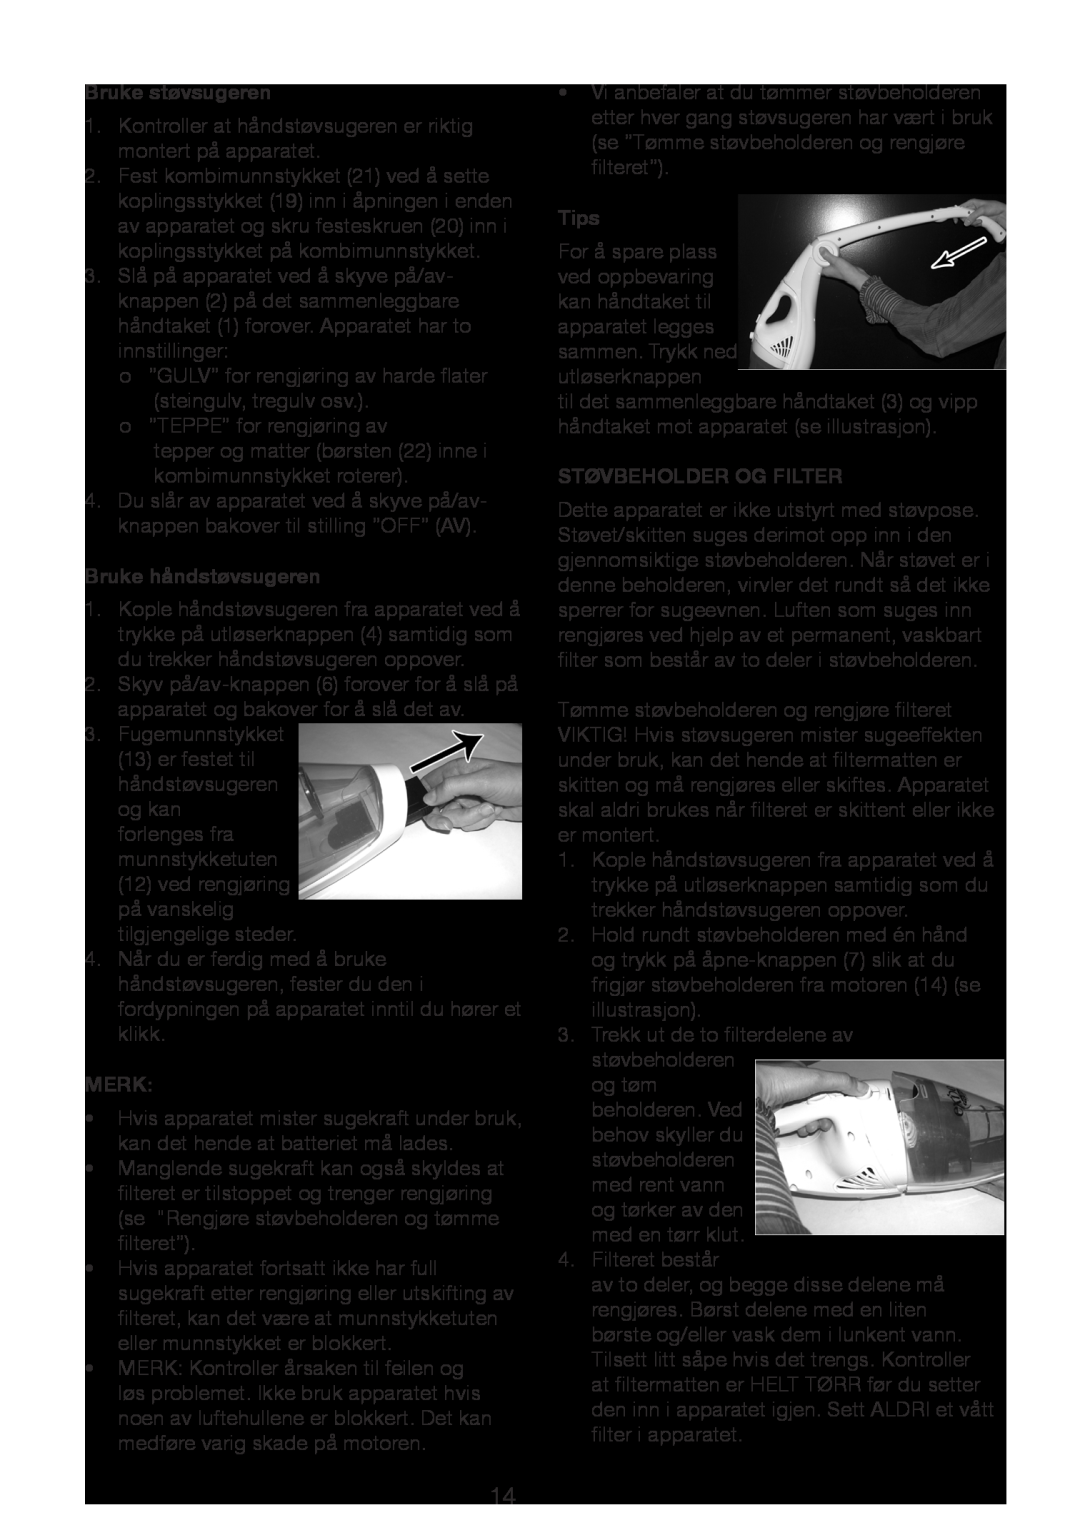 Melissa 640-15 manual Bruke støvsugeren, Bruke håndstøvsugeren, Merk, Tips, Støvbeholder Og Filter 